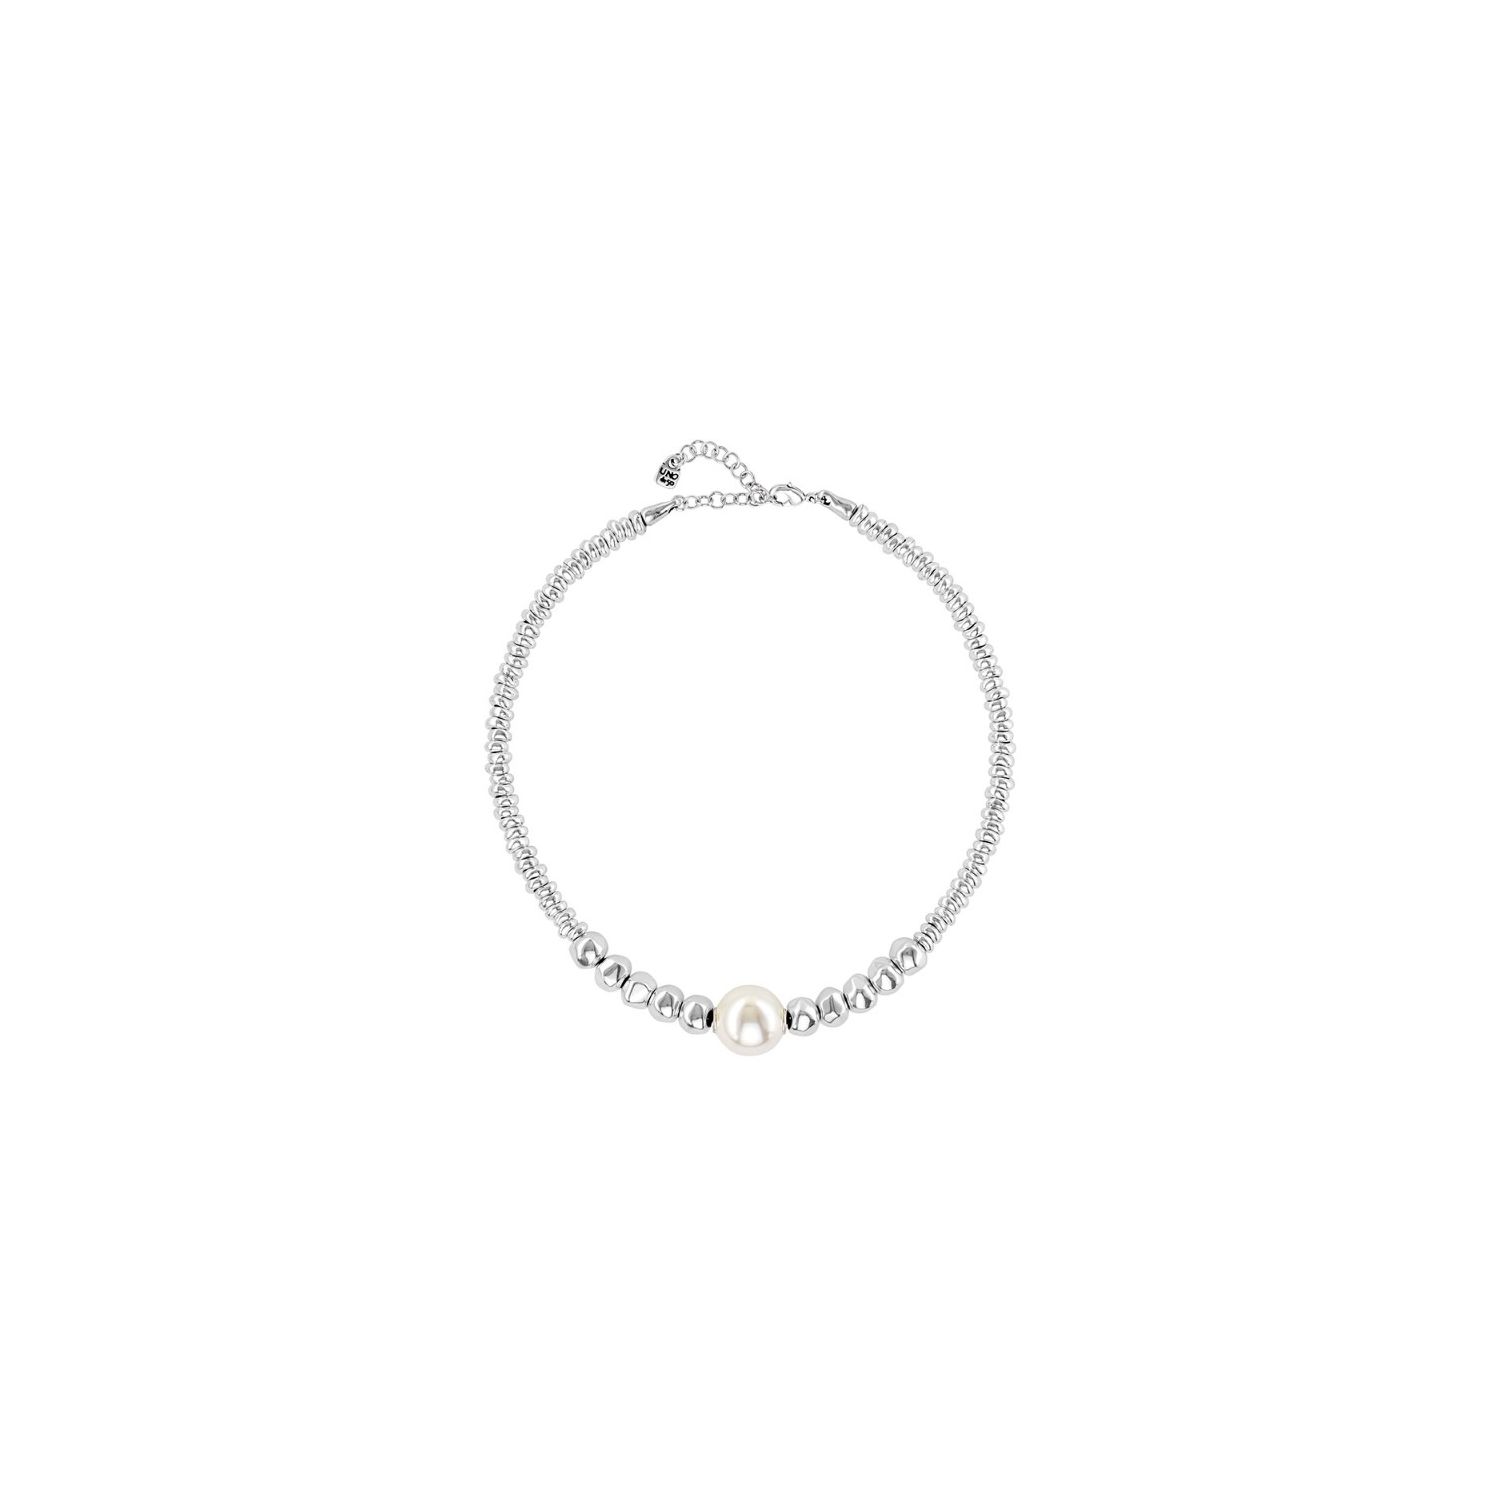 Necklace by Uno de 50